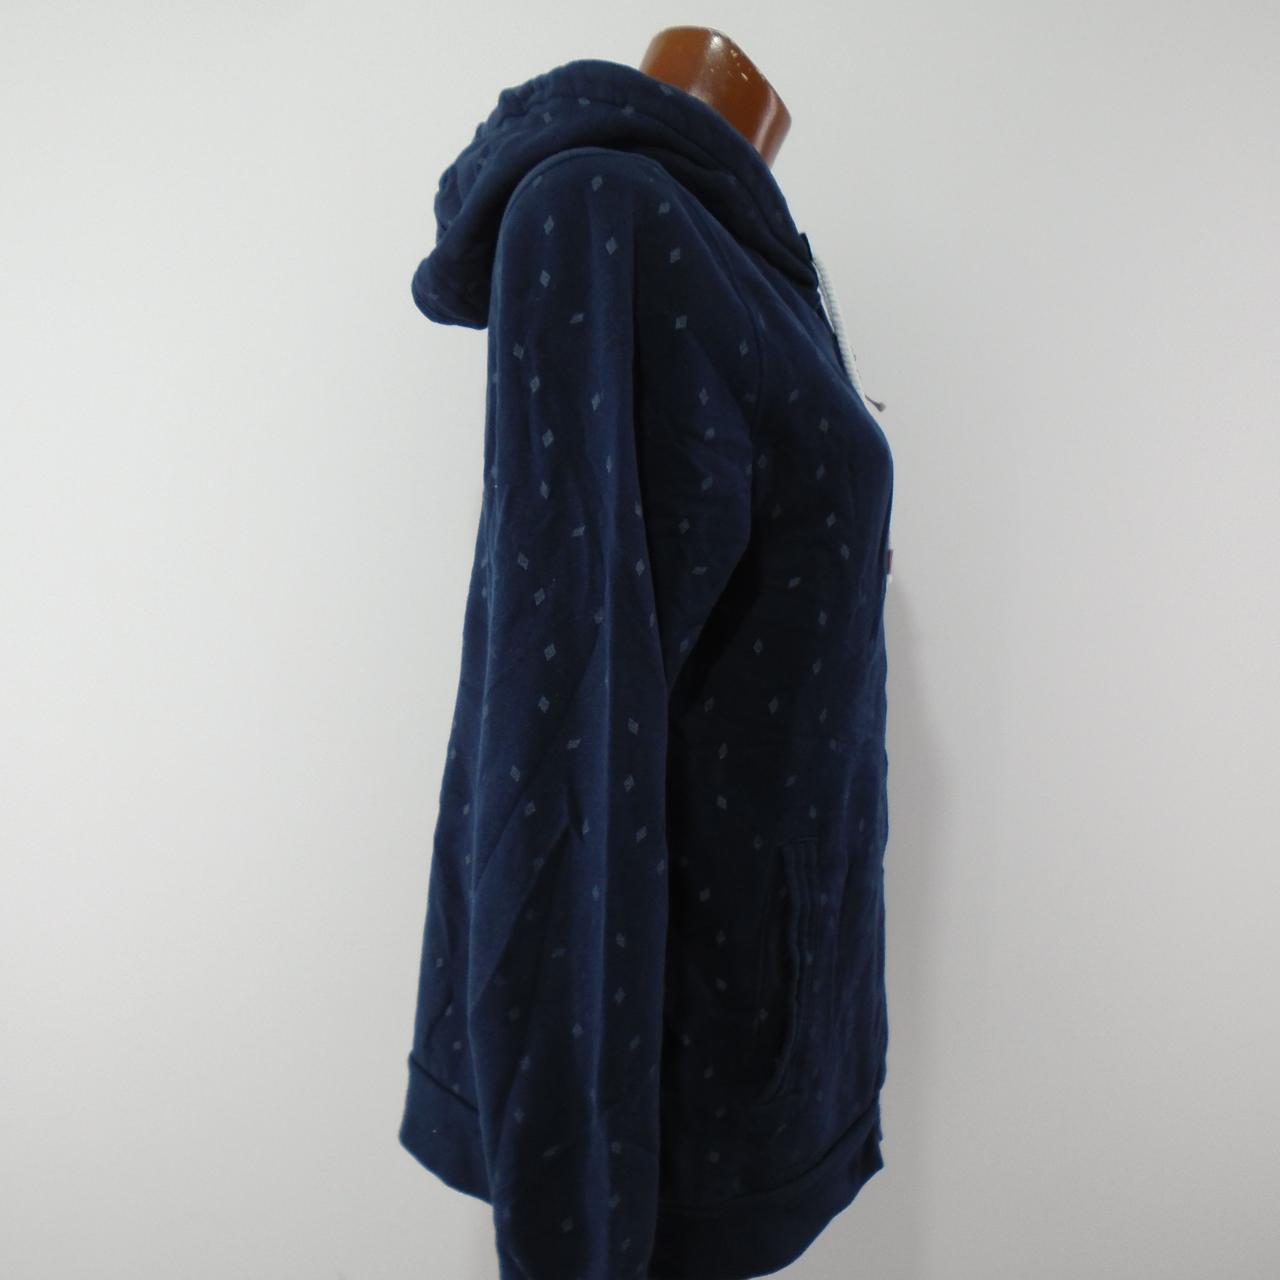 Sudadera con capucha de mujer Esmara. Azul oscuro. L. Usado. Bien